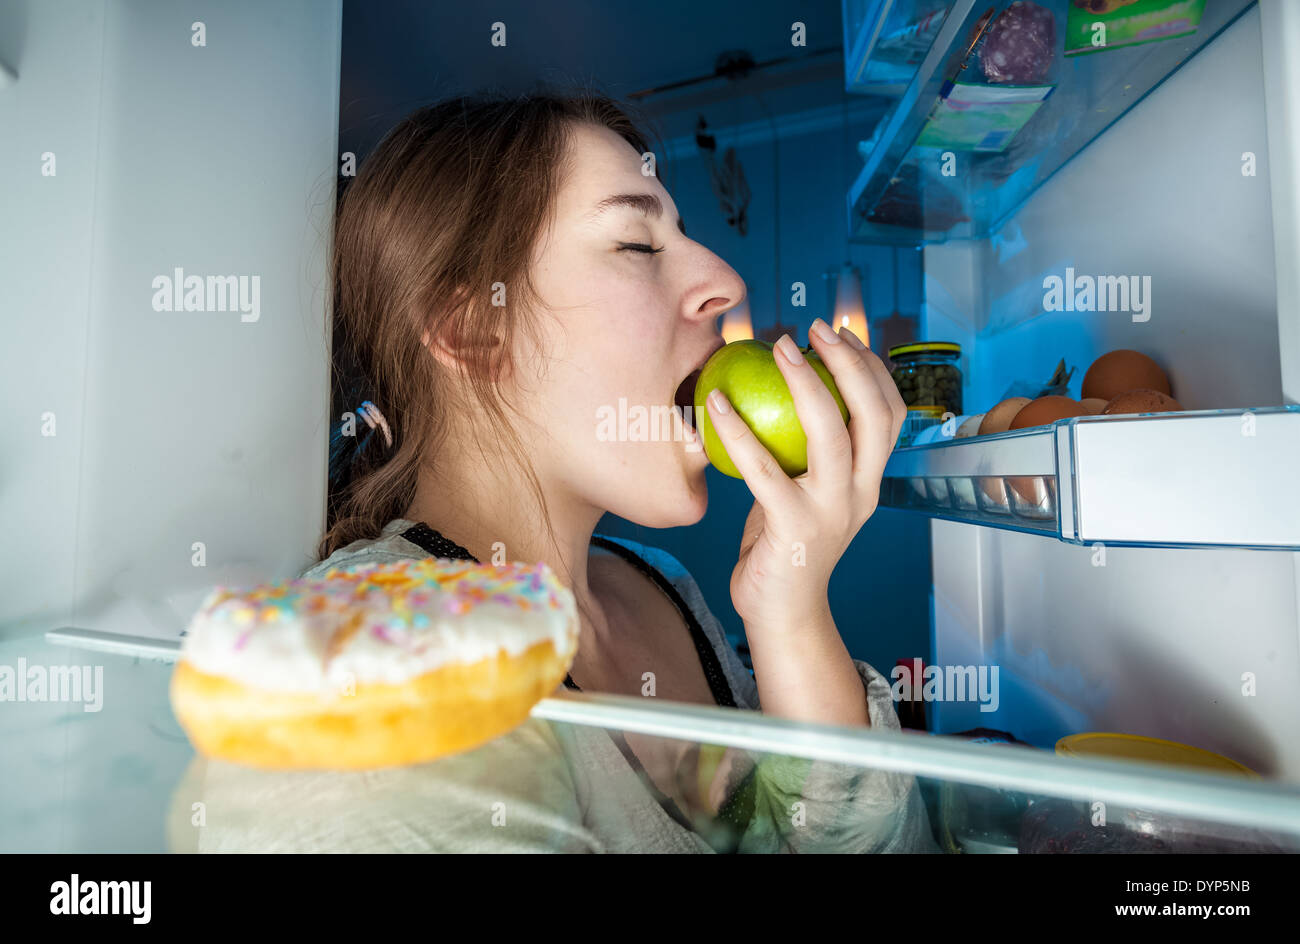 Closeup portrait de l'intérieur du réfrigérateur de young woman eating apple Banque D'Images